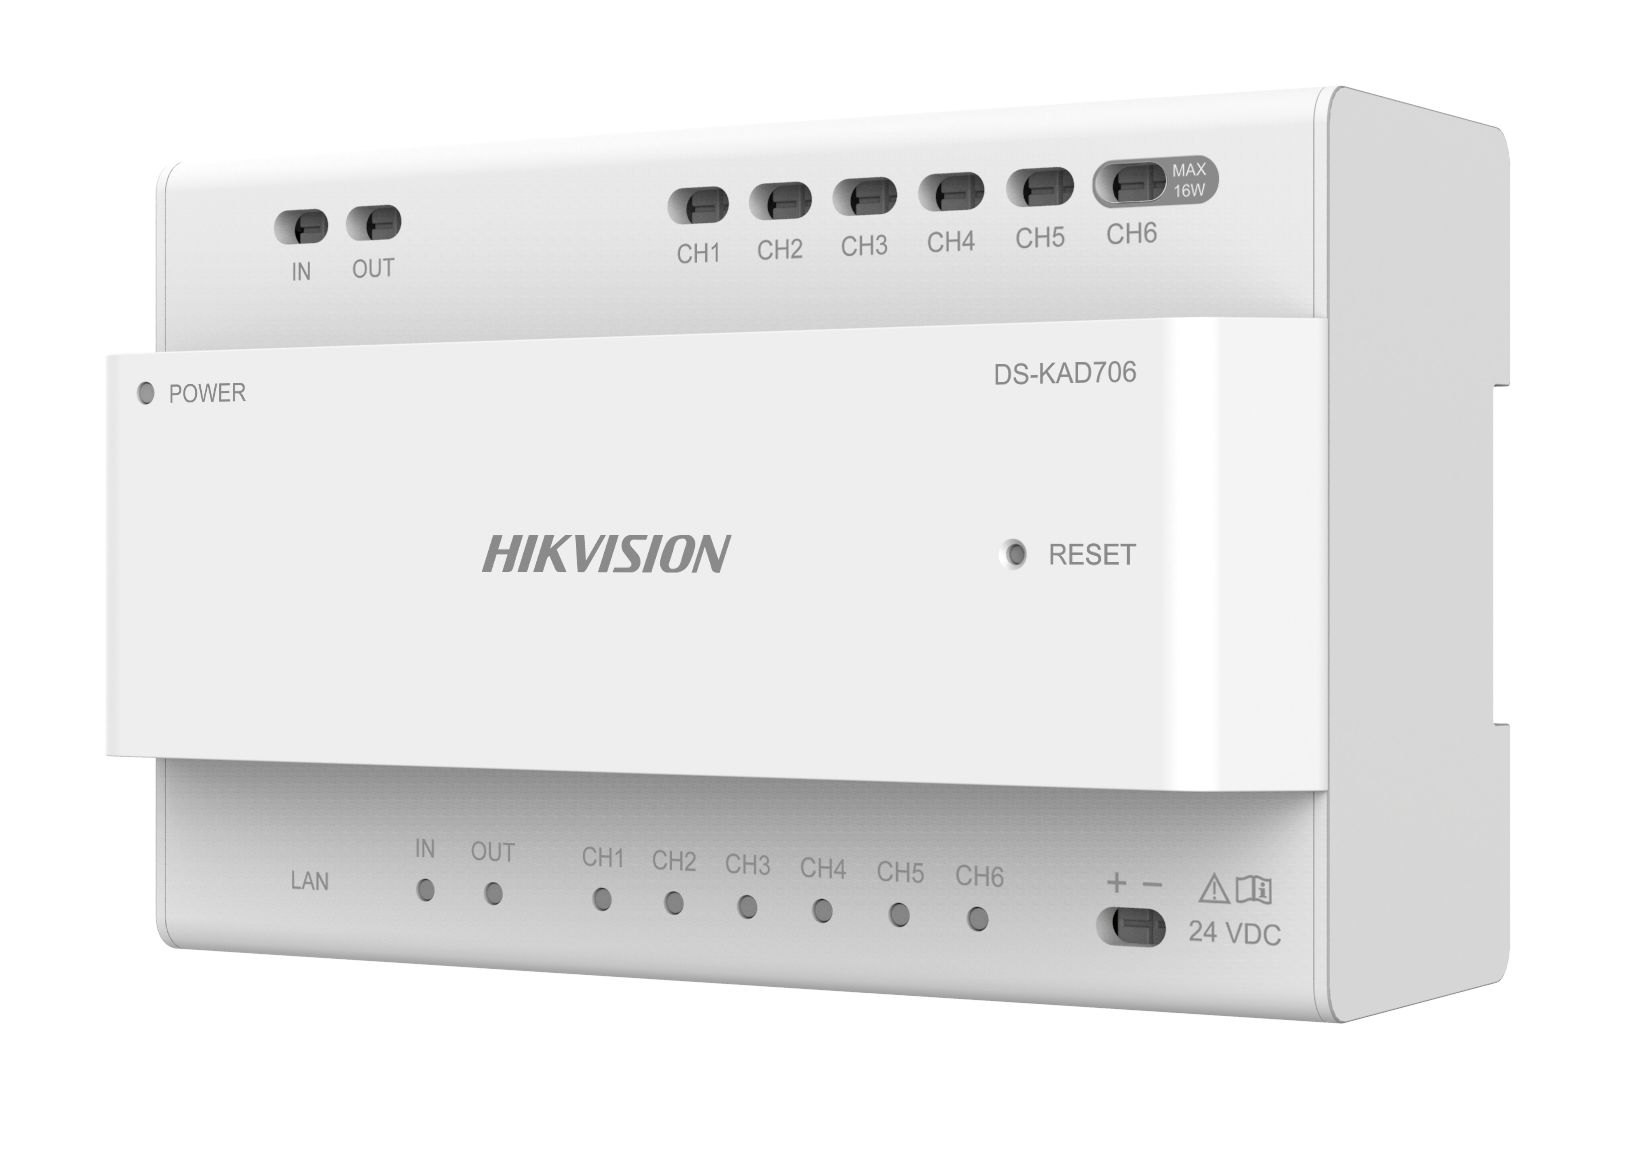 Distribuitor audio/video pentru sisteme de videointerfonie cu conexiune pe 2 fire Hikvision DS-KAD706, 6 canale de alimentare( include un canal cu putere maxima de 16W), interfata retea: 1, RJ45, alimentare 24 VDC_1